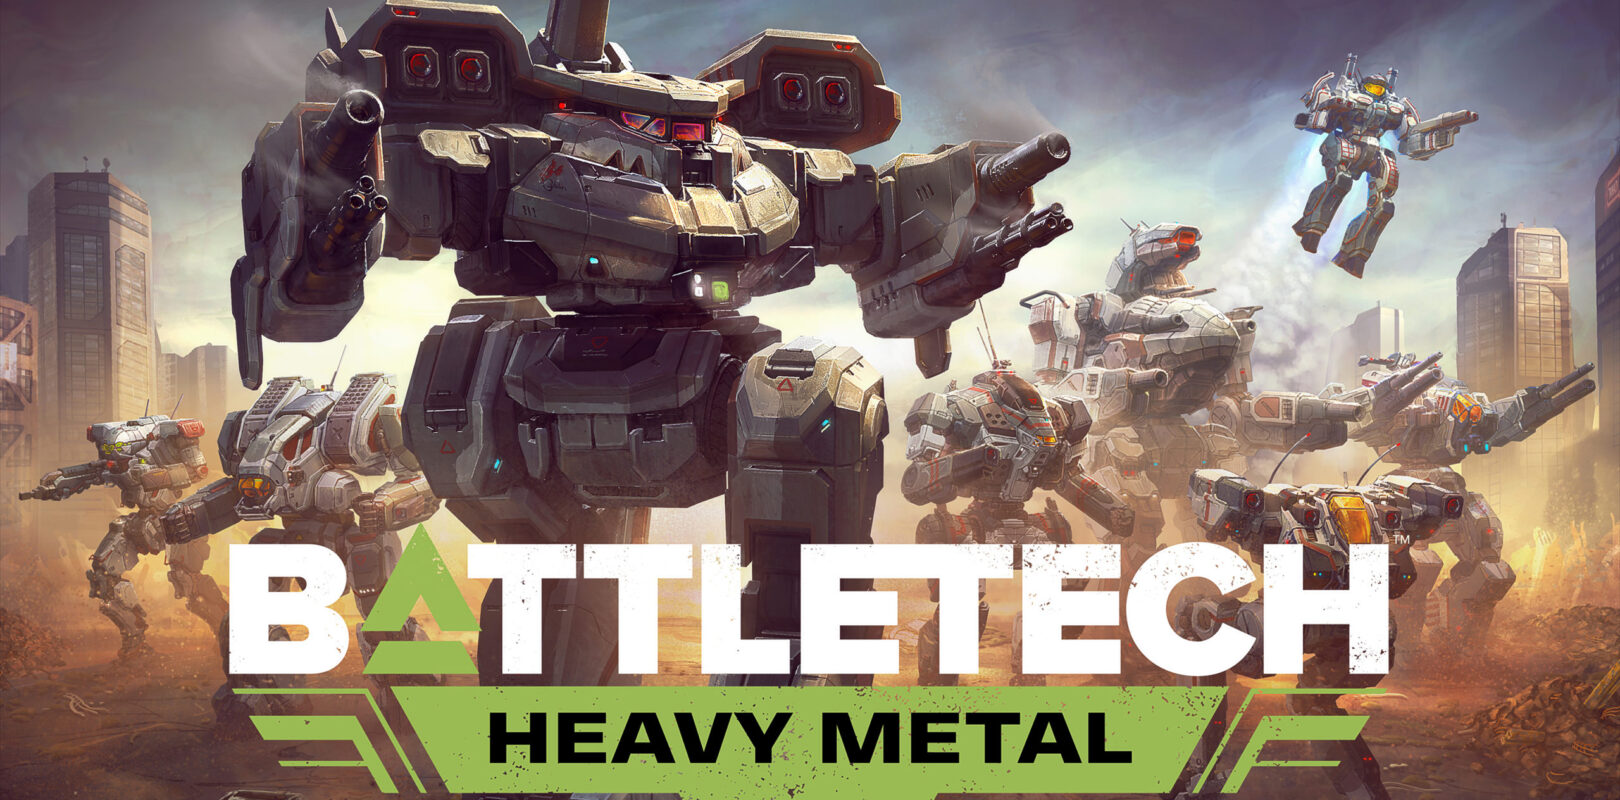 battletech heavy metal dlc news